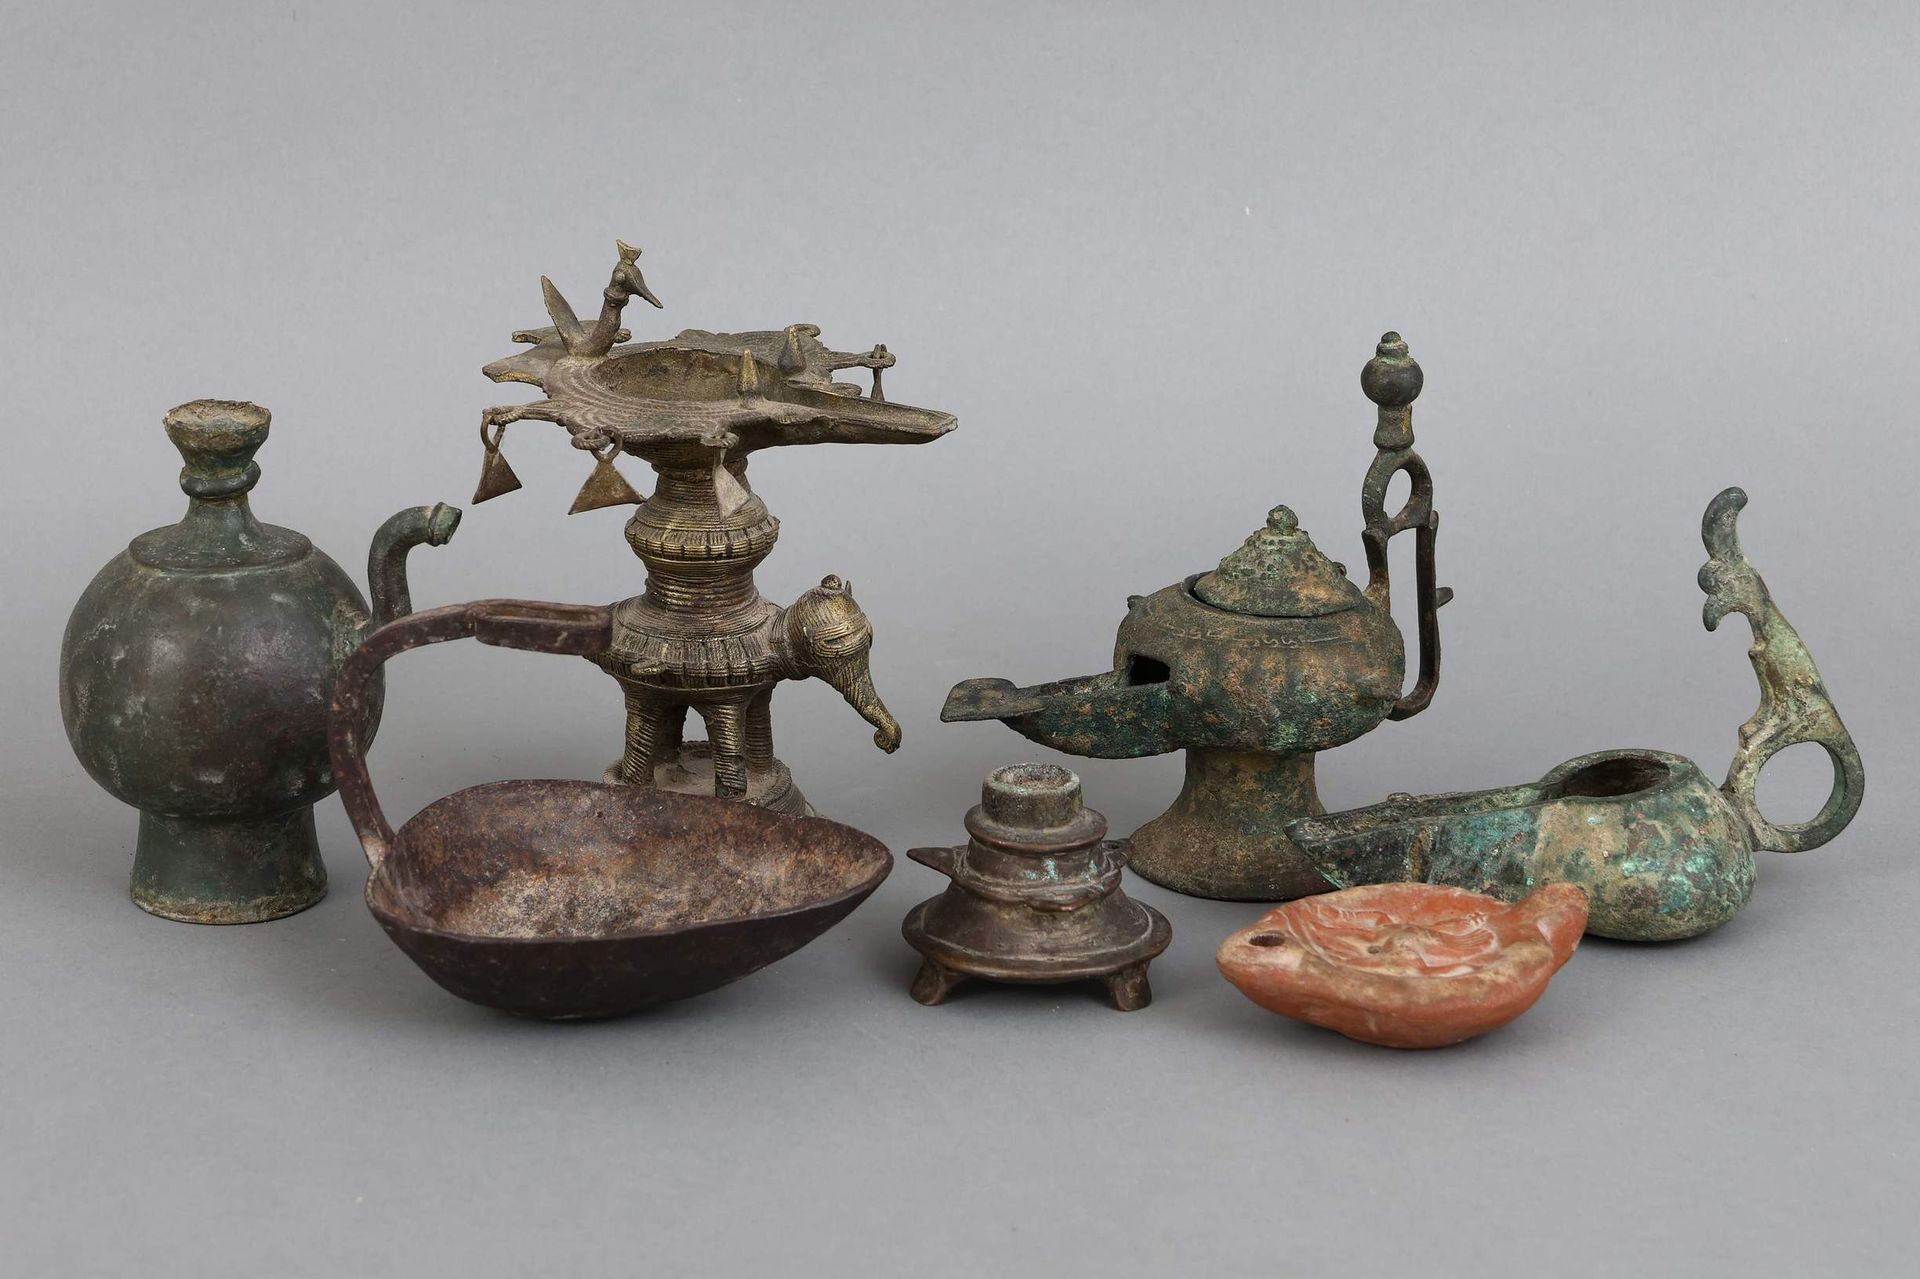 Sammlung antiker Öl-Lampen, -Kannen und -Schalen - 7 Stü…